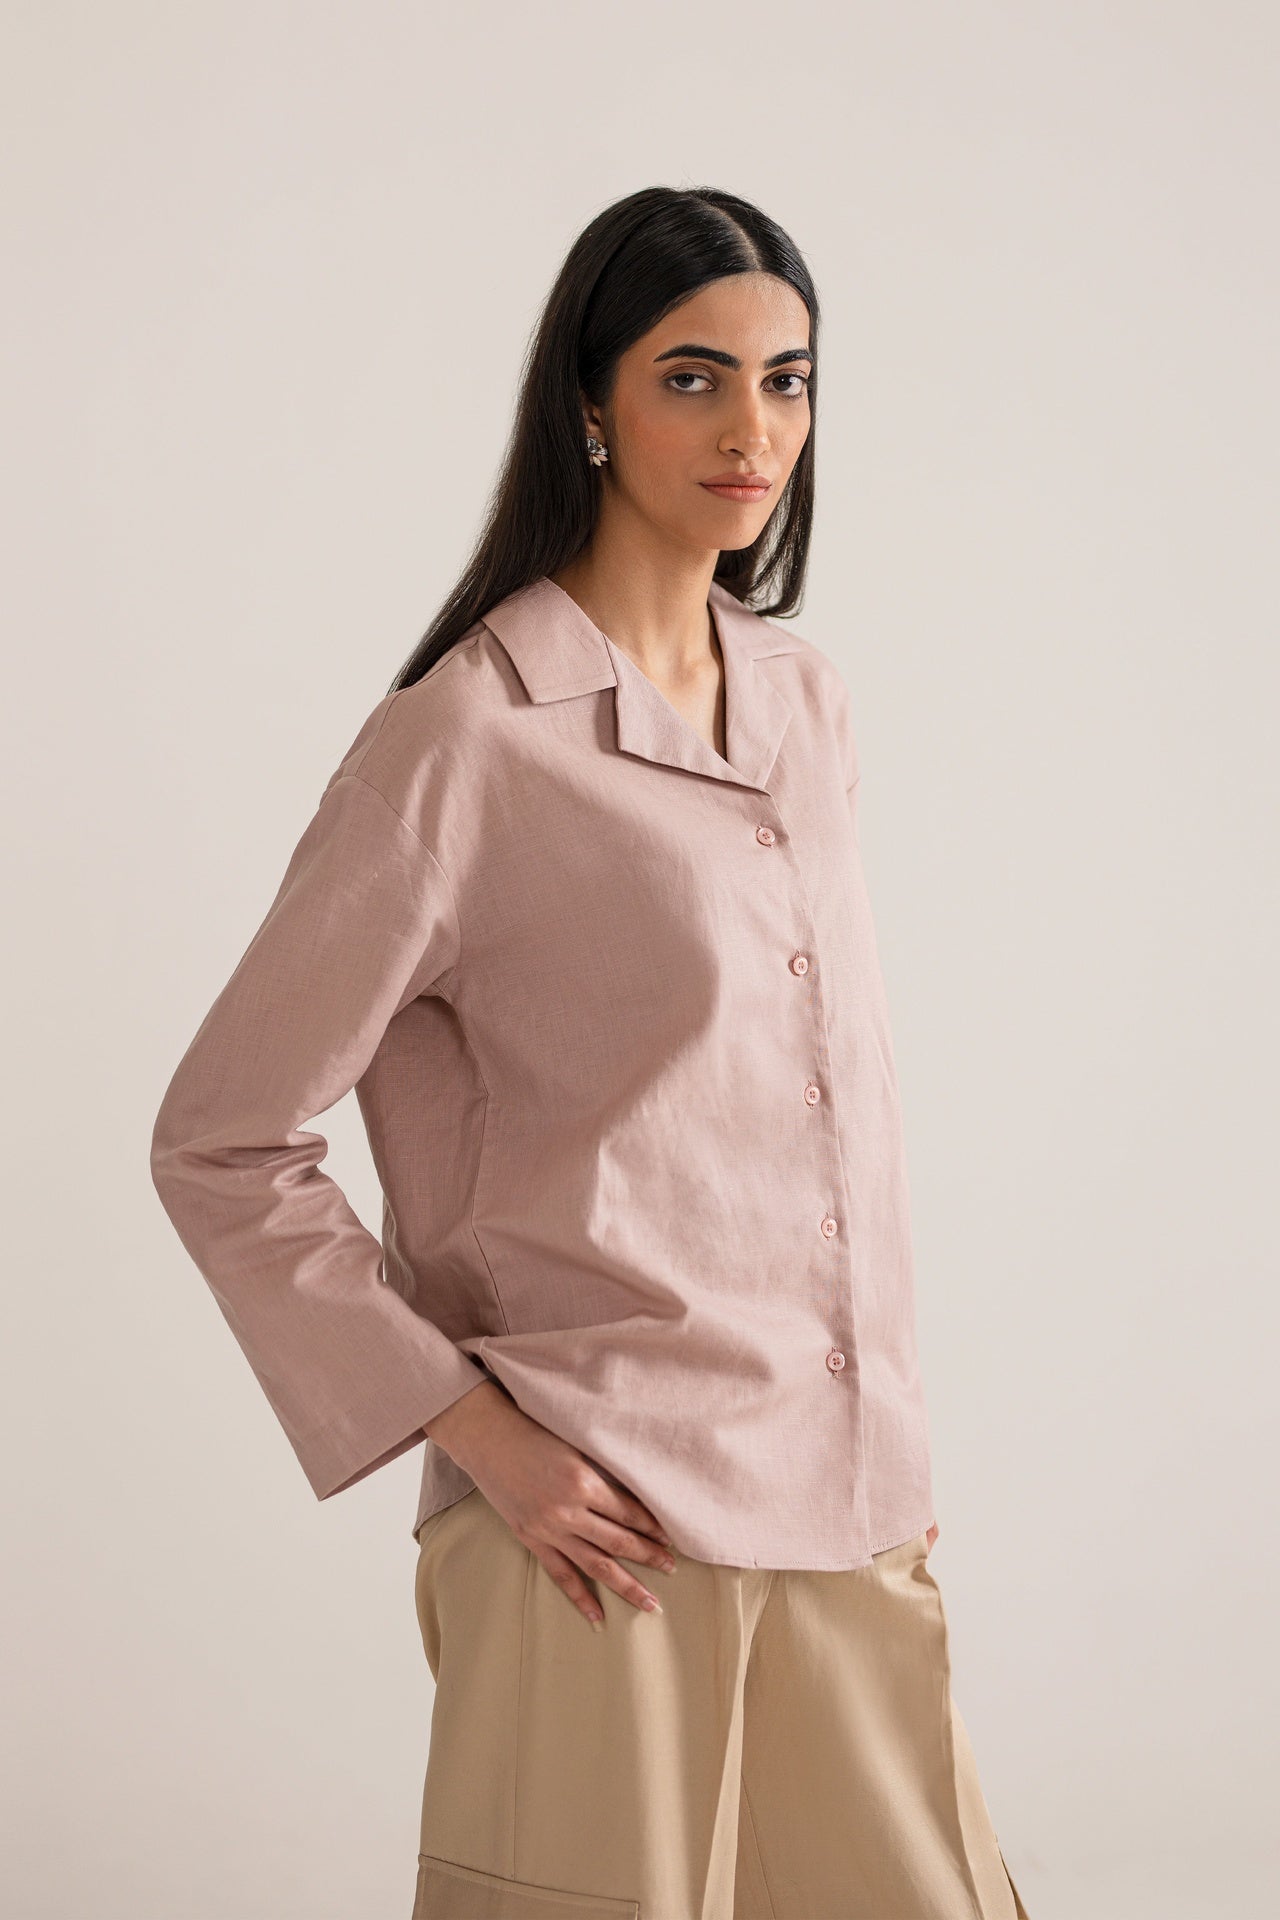 Tea Pink Full Sleeves Resort Shirt price